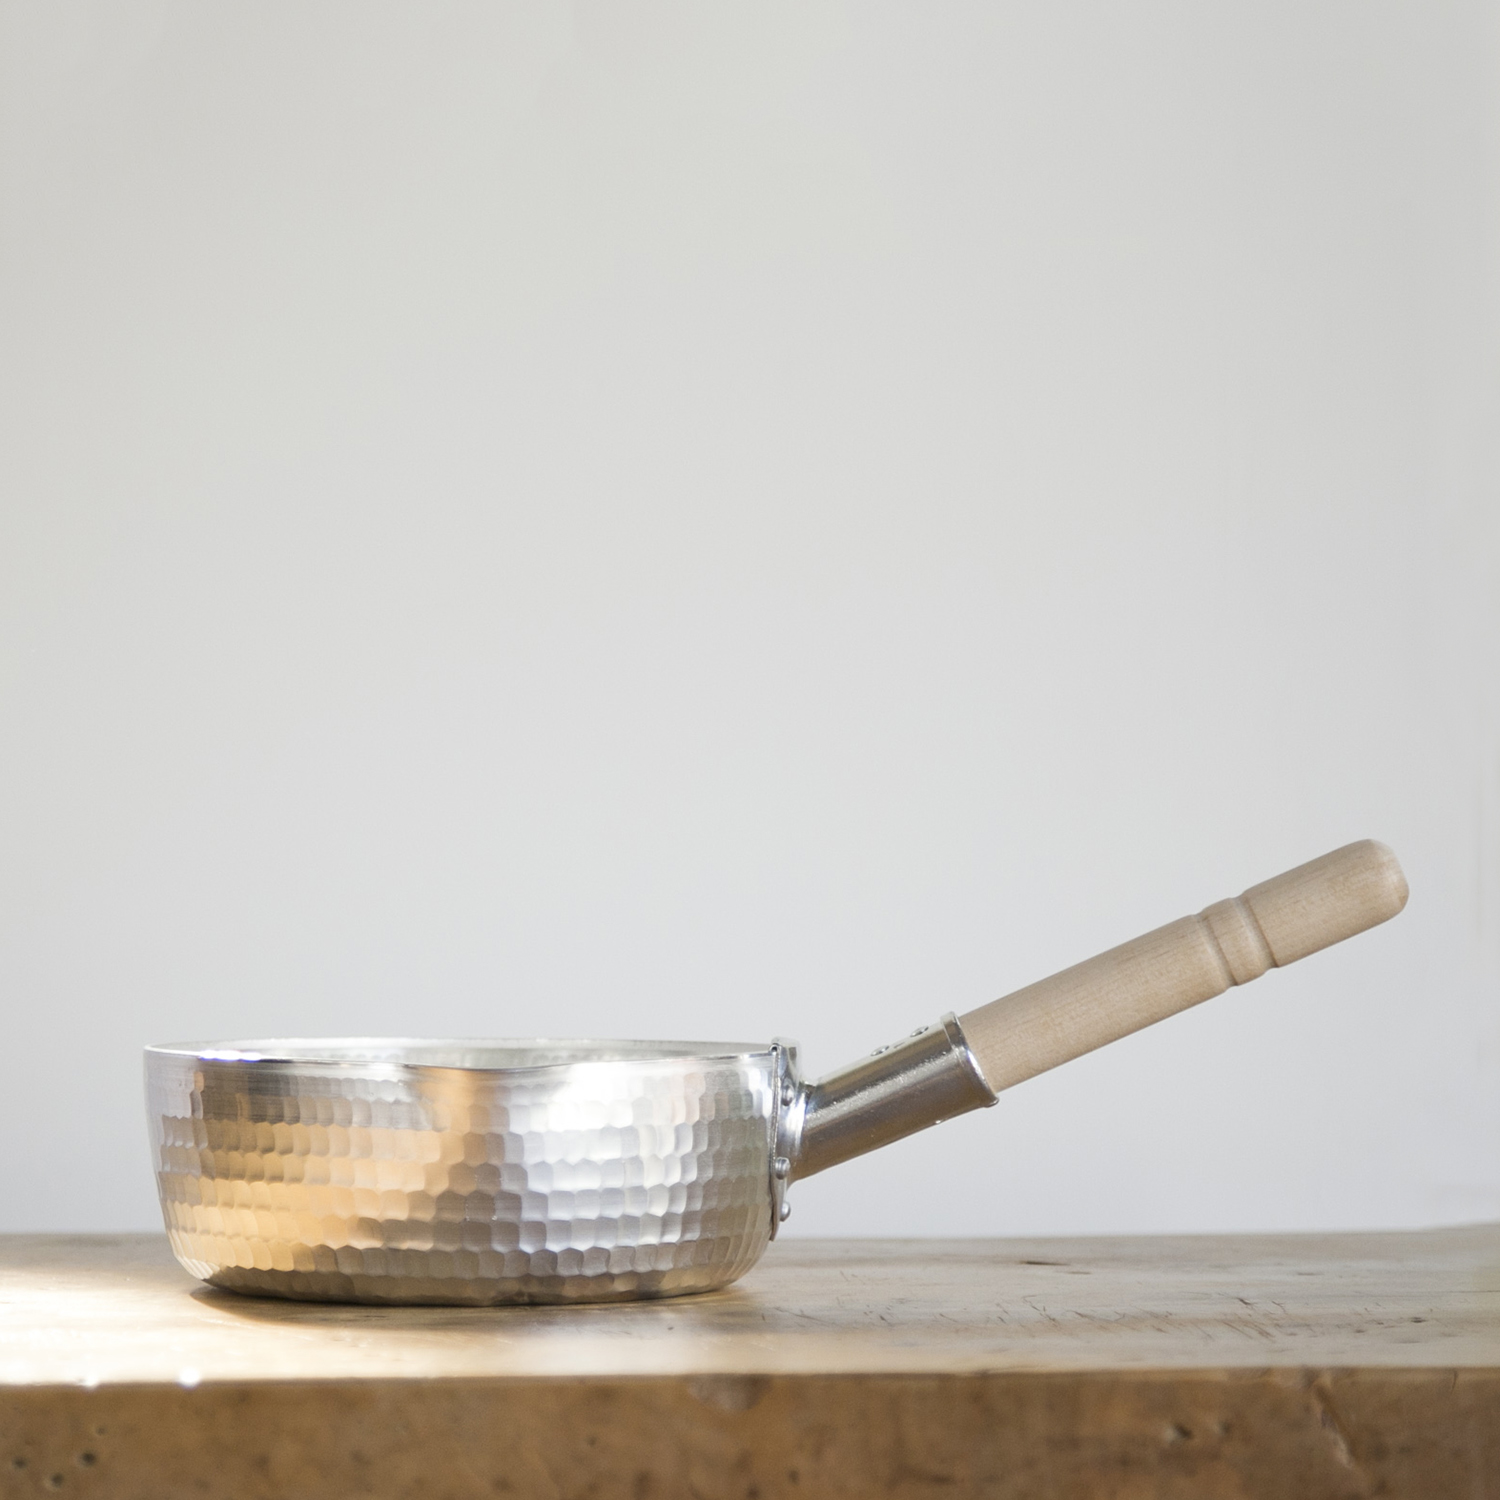 中村銅器製作所/アルミ特製行平鍋 15cm - 軽く丈夫で扱いやすい、アルミで作った行平鍋